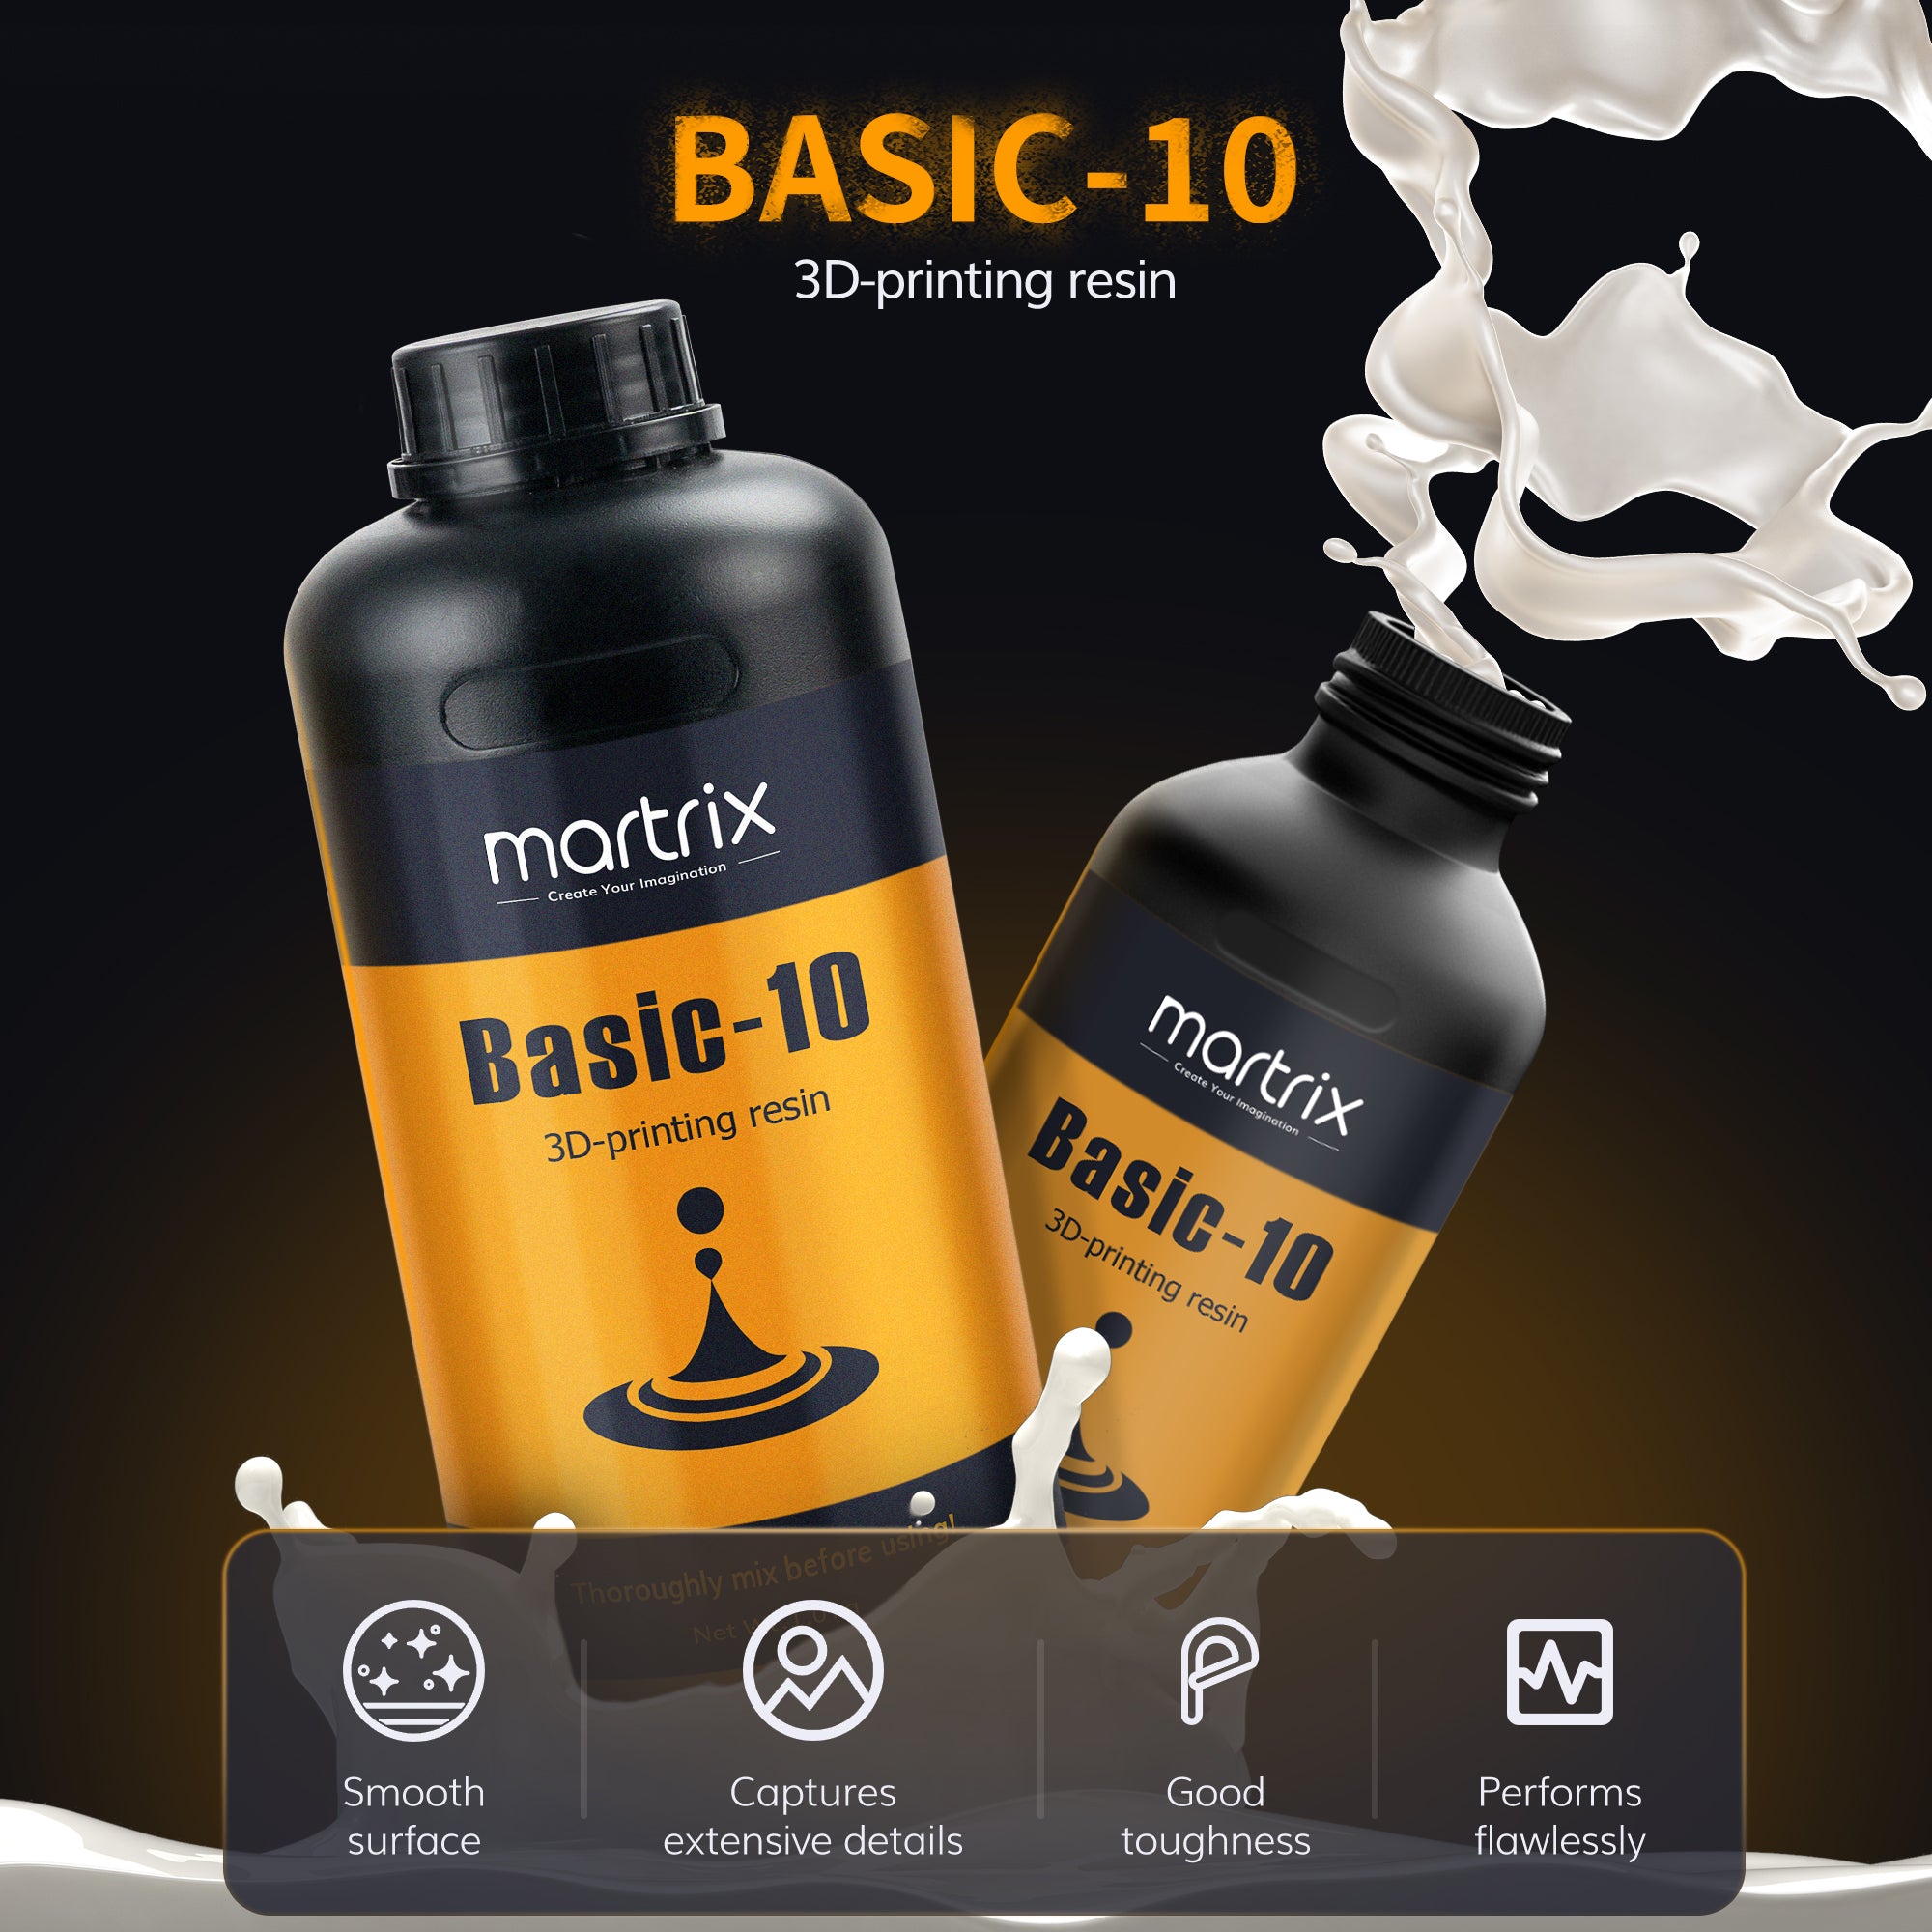 Basic-10